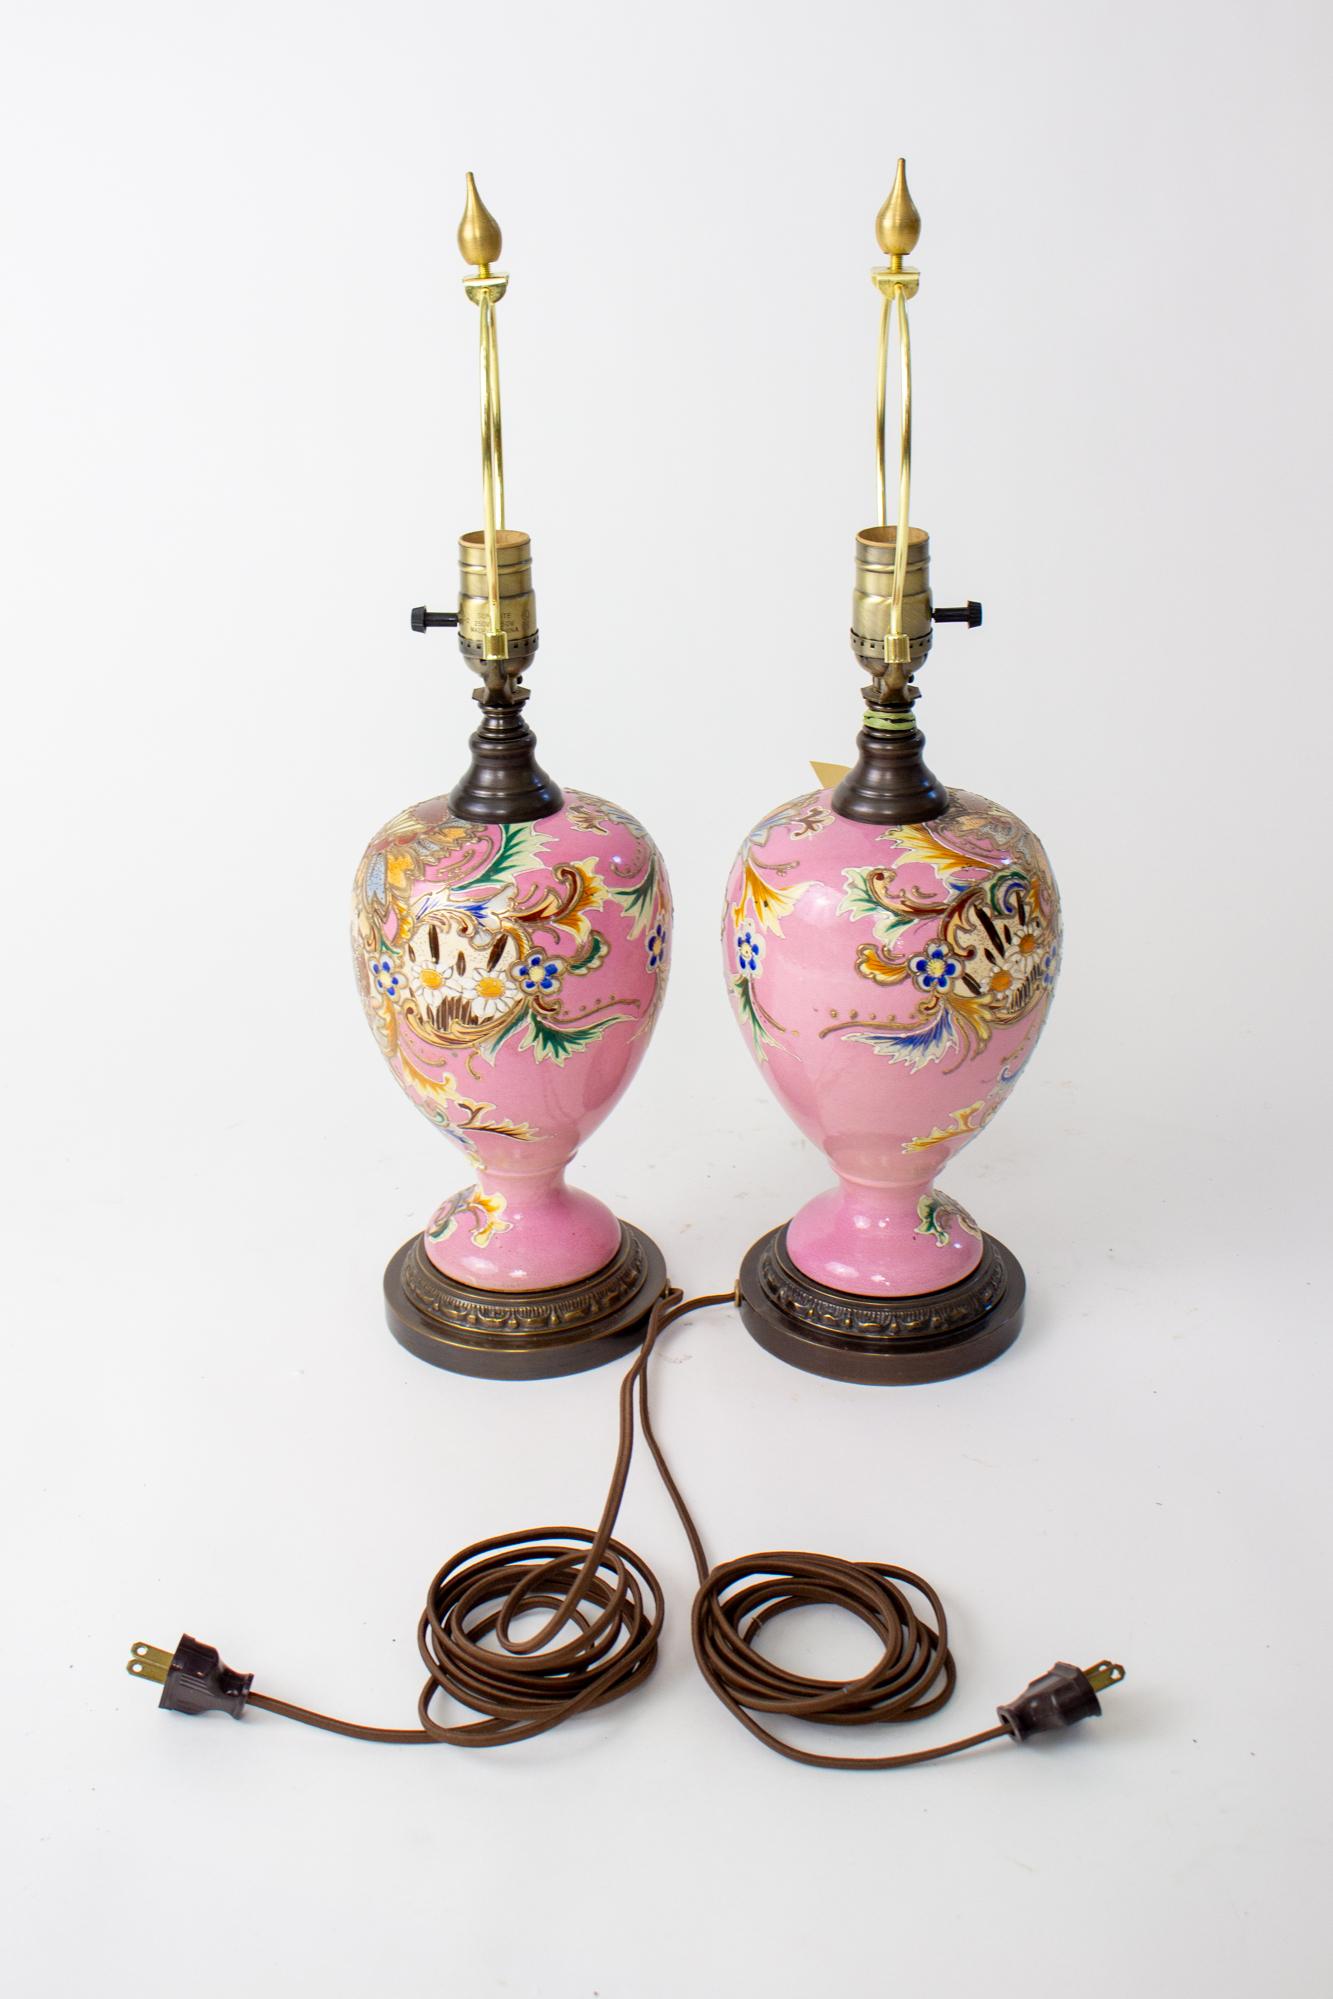 Paire de lampes de table en Satsuma rose du début du 20e siècle. Une paire inhabituelle de lampes de table en Satsuma rose avec des fleurs et des tourbillons dessinés sauvagement avec un portrait d'un homme et d'une femme en tenue traditionnelle